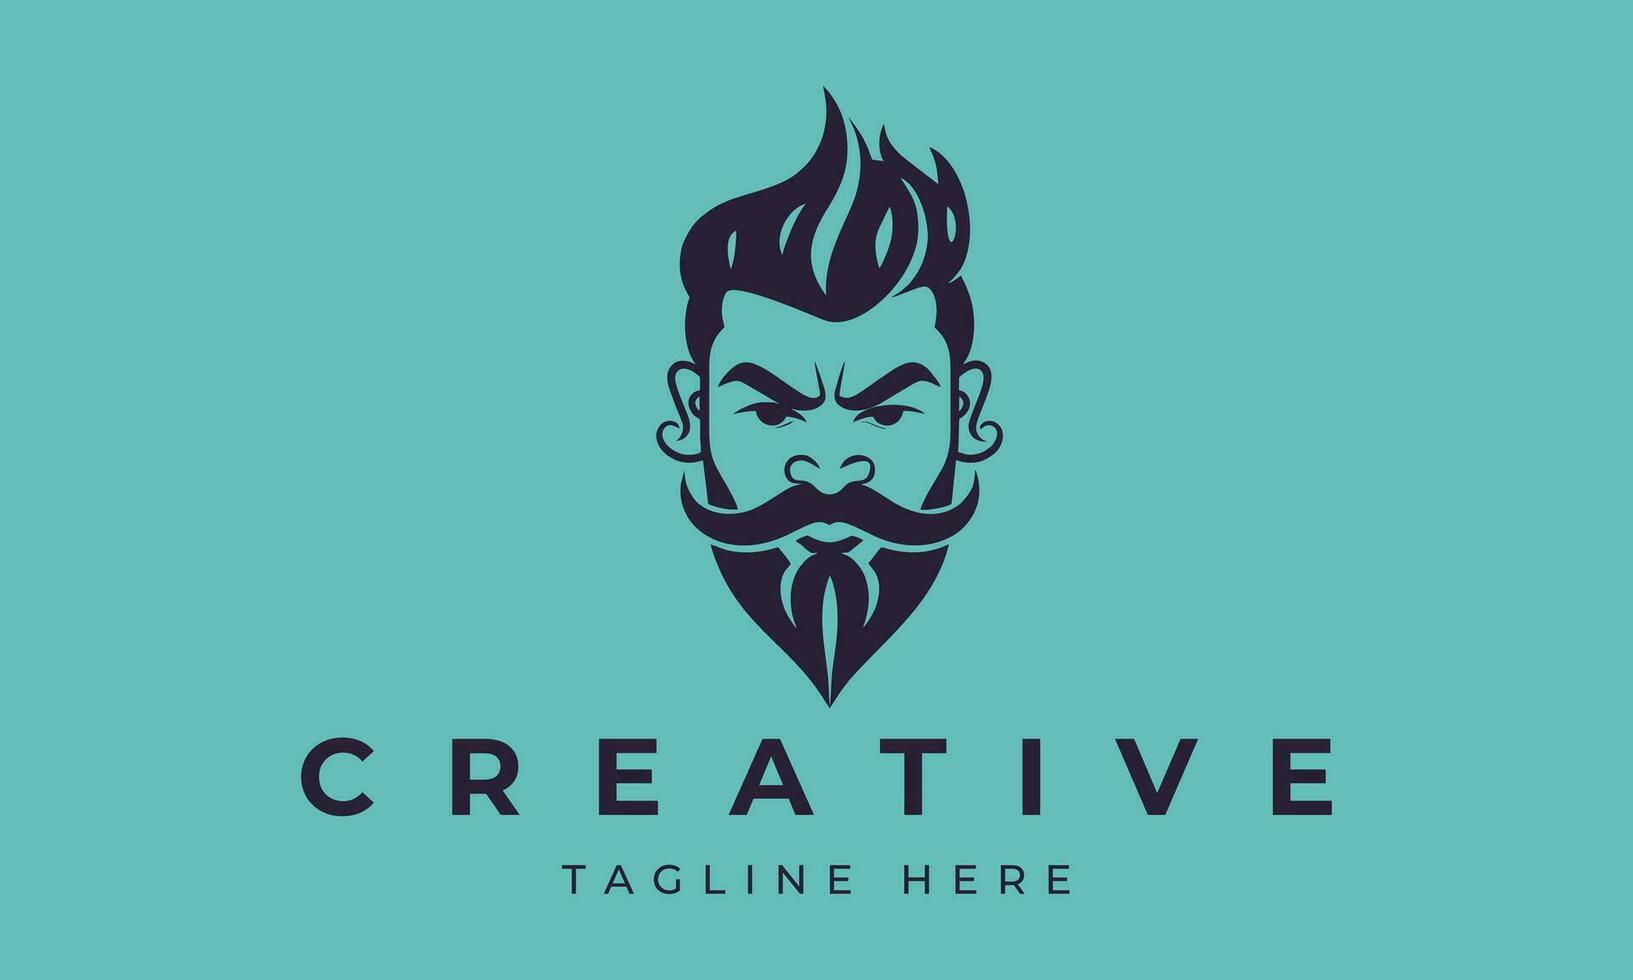 stilvoll Barbier Geschäft Logo mit ein schneidig Mann mit ein Bart und Schnurrbart. vektor